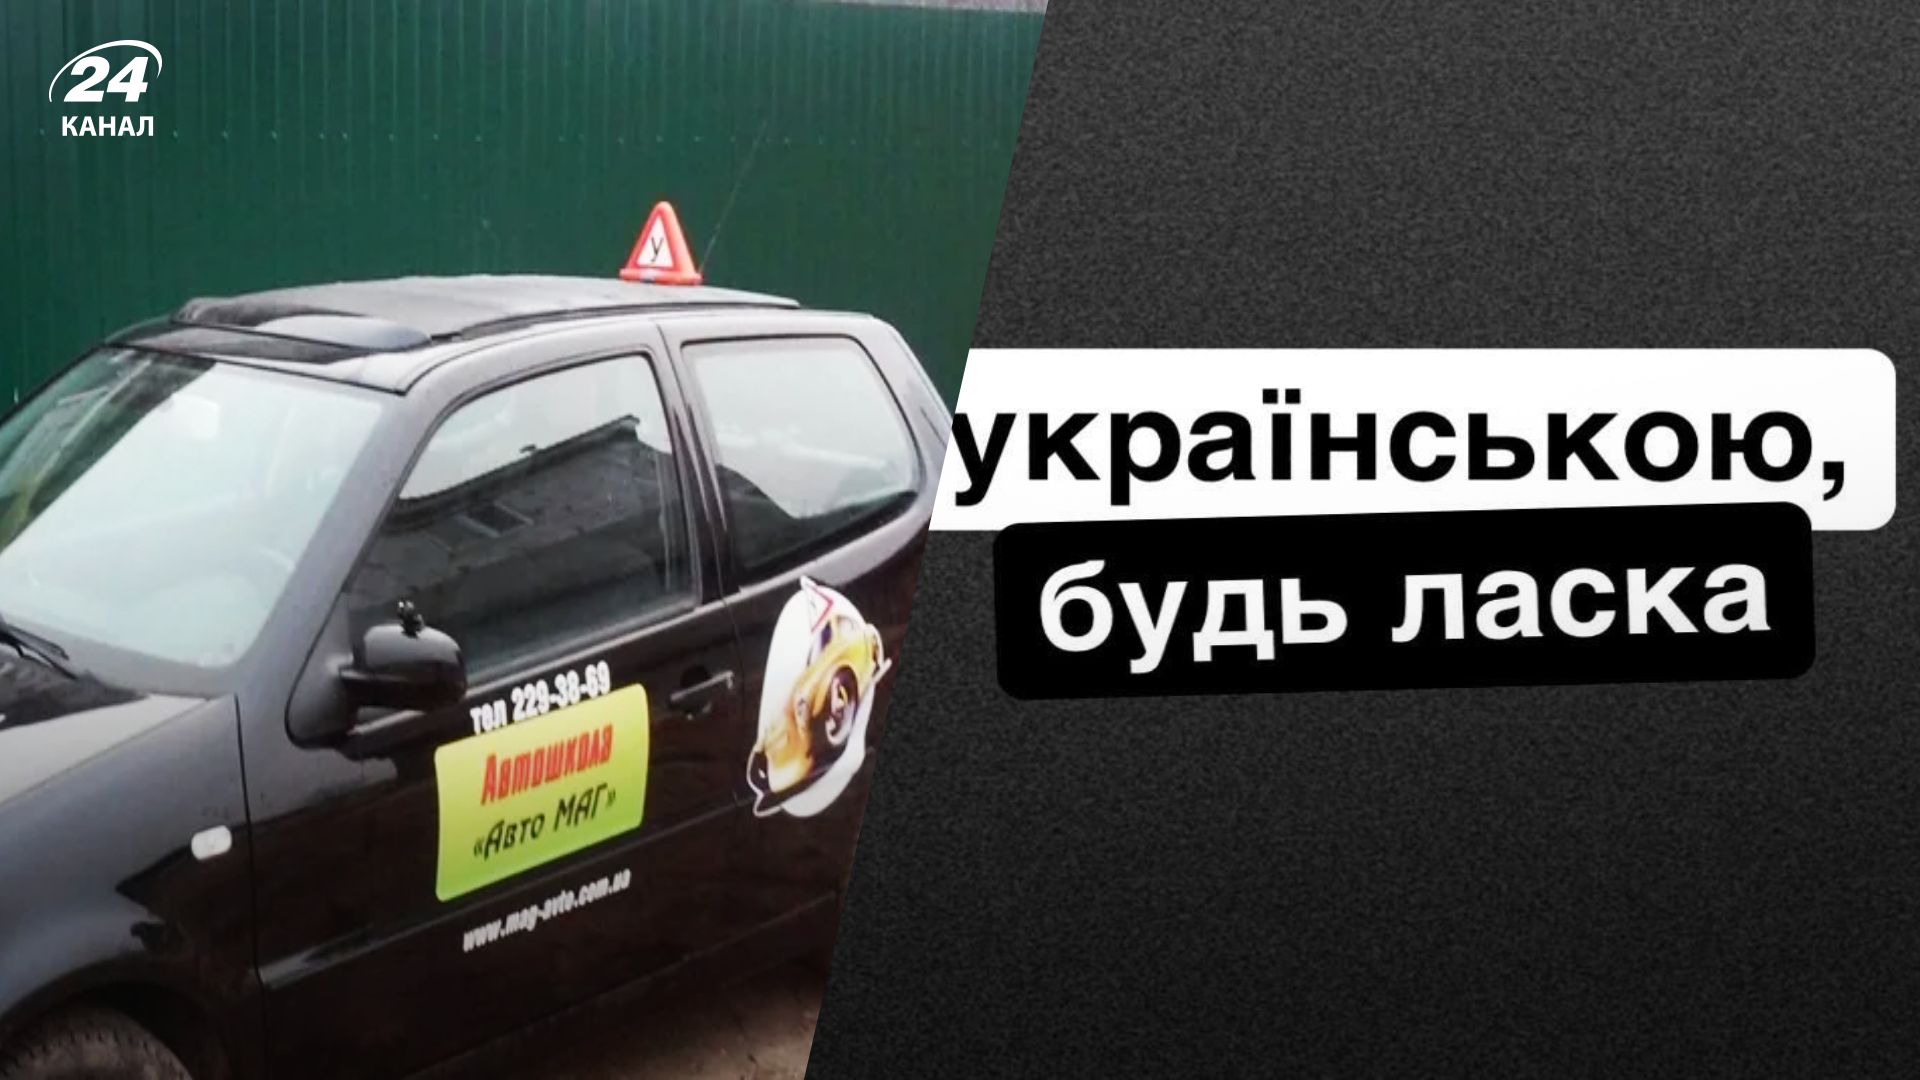 В Киеве разразился языковой скандал: автошкола отказалась обслуживать клиента на украинском